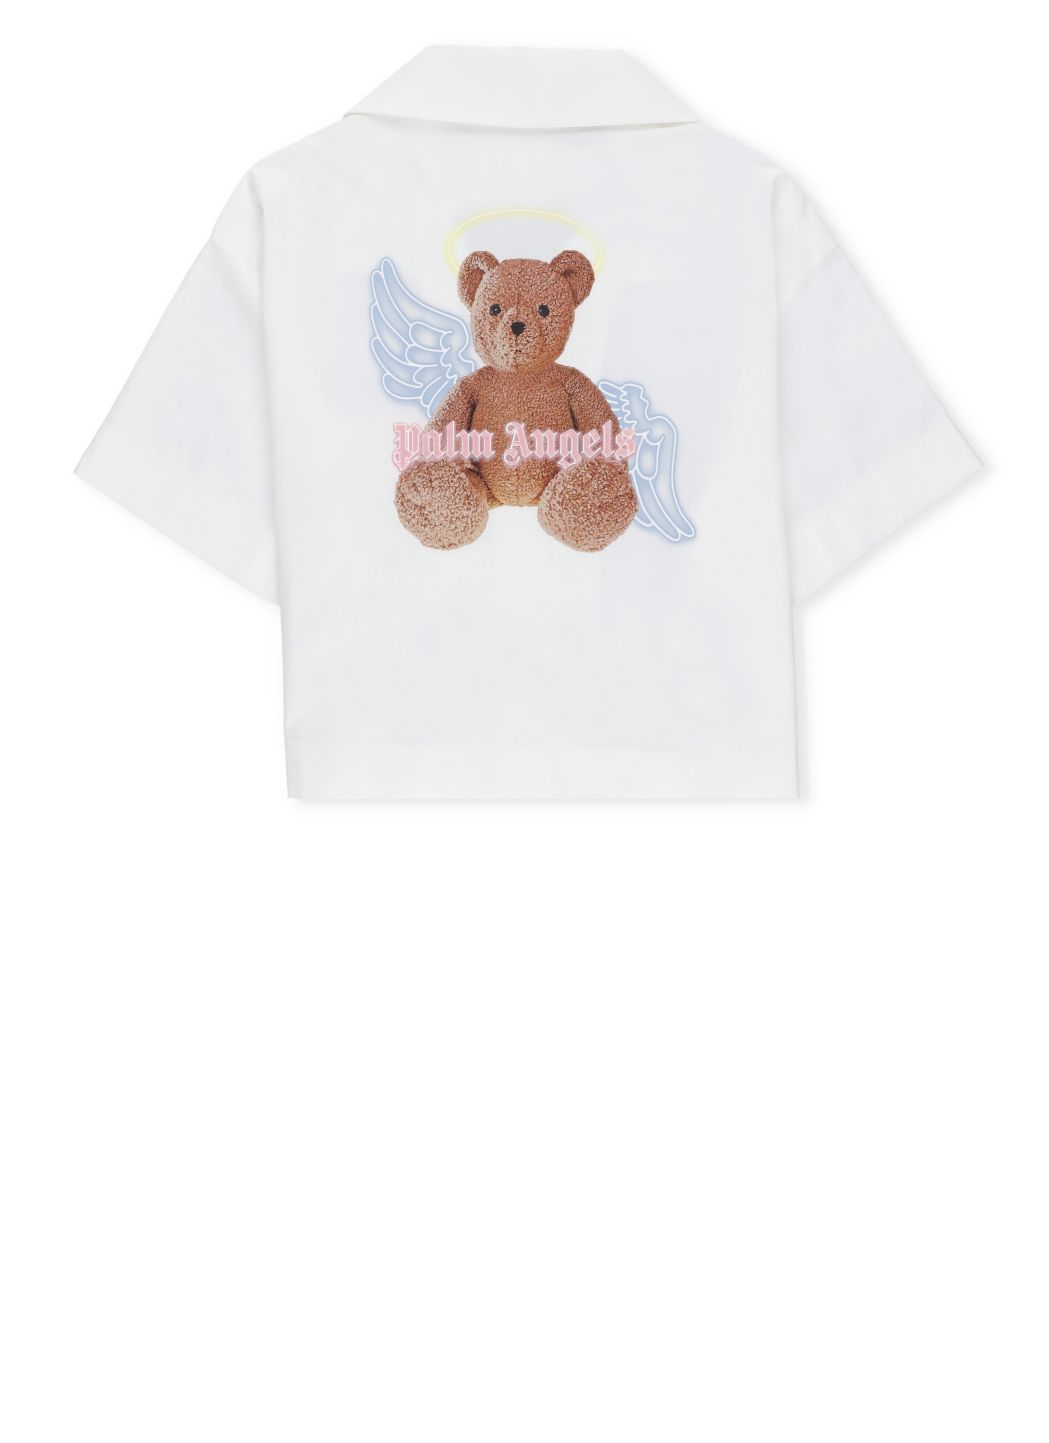 Bear Angel shirt